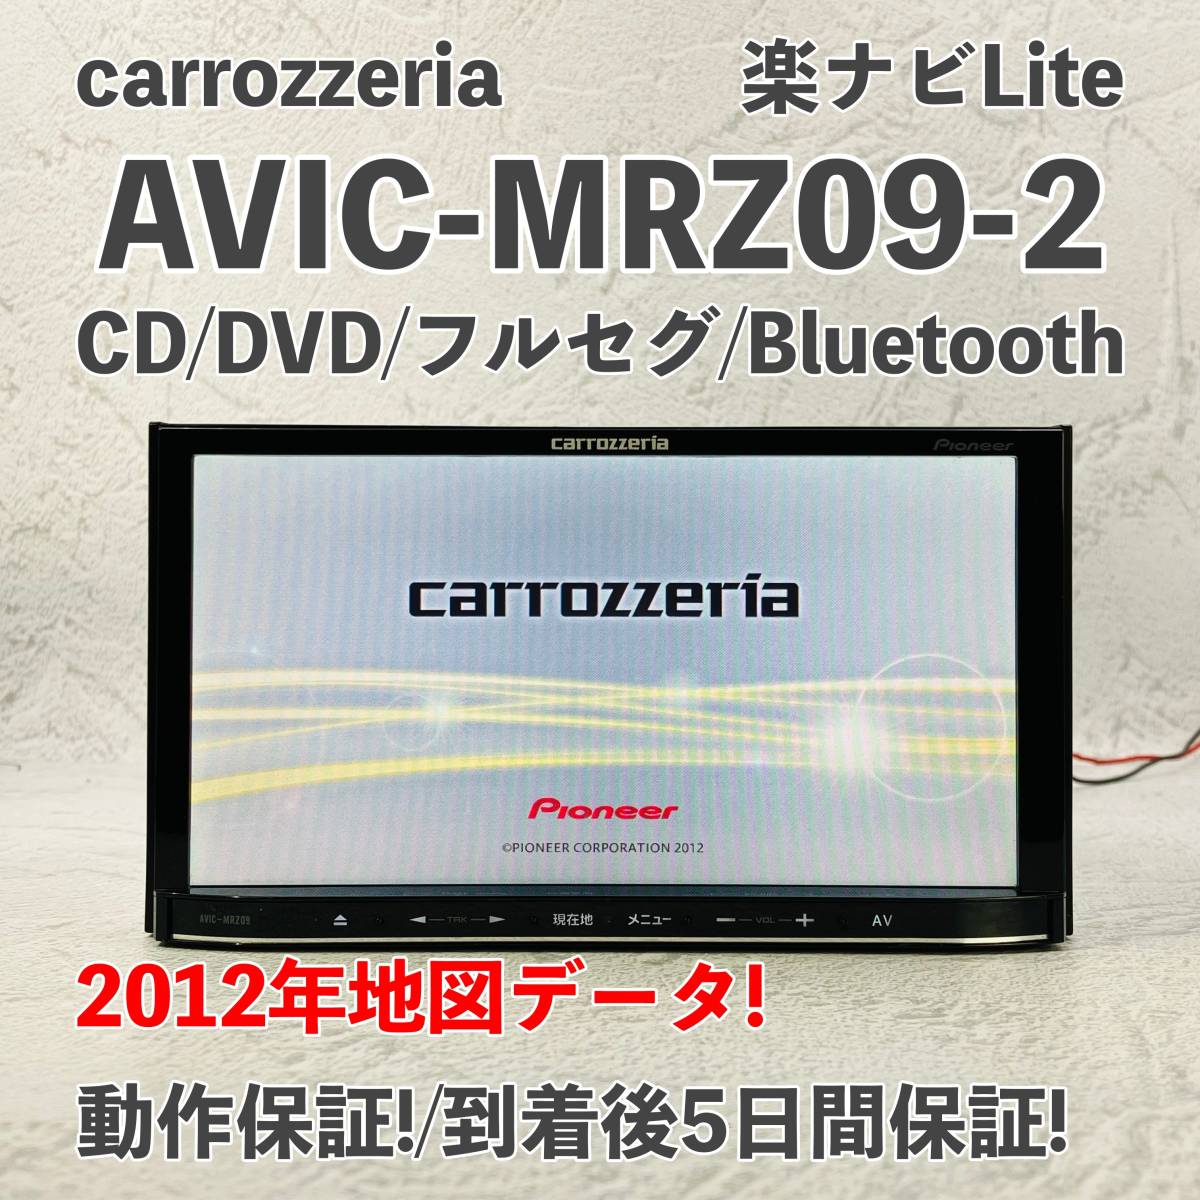 カロッツェリア AVIC MRZ09-2 HDDナビBluetooth TV | monsterdog.com.br